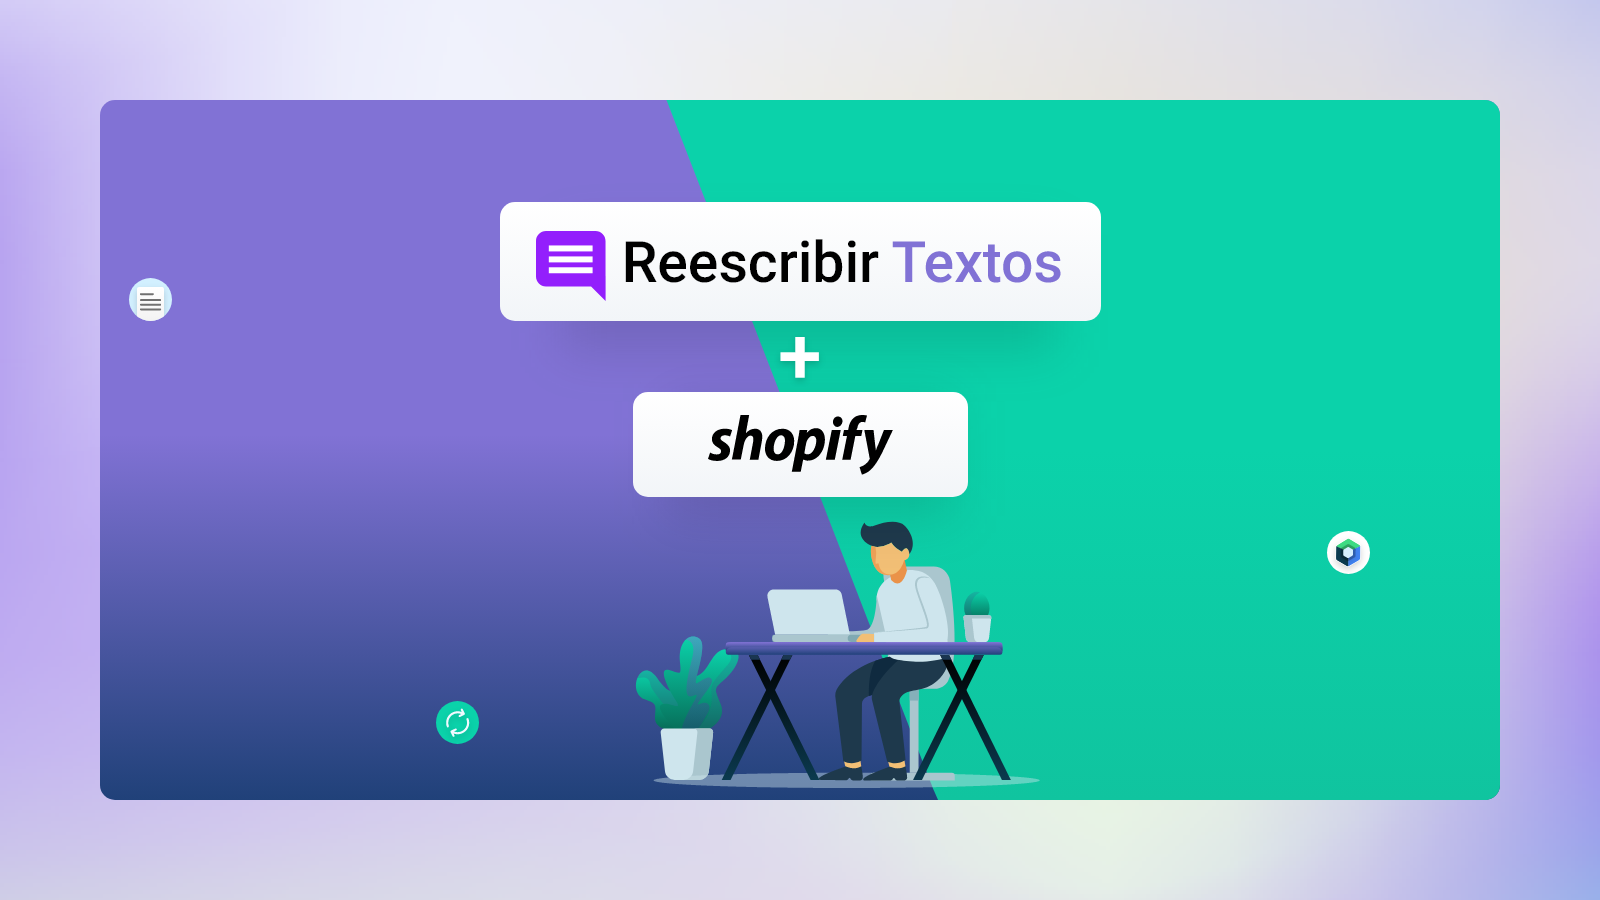 App Reescribir Textos - Shopify